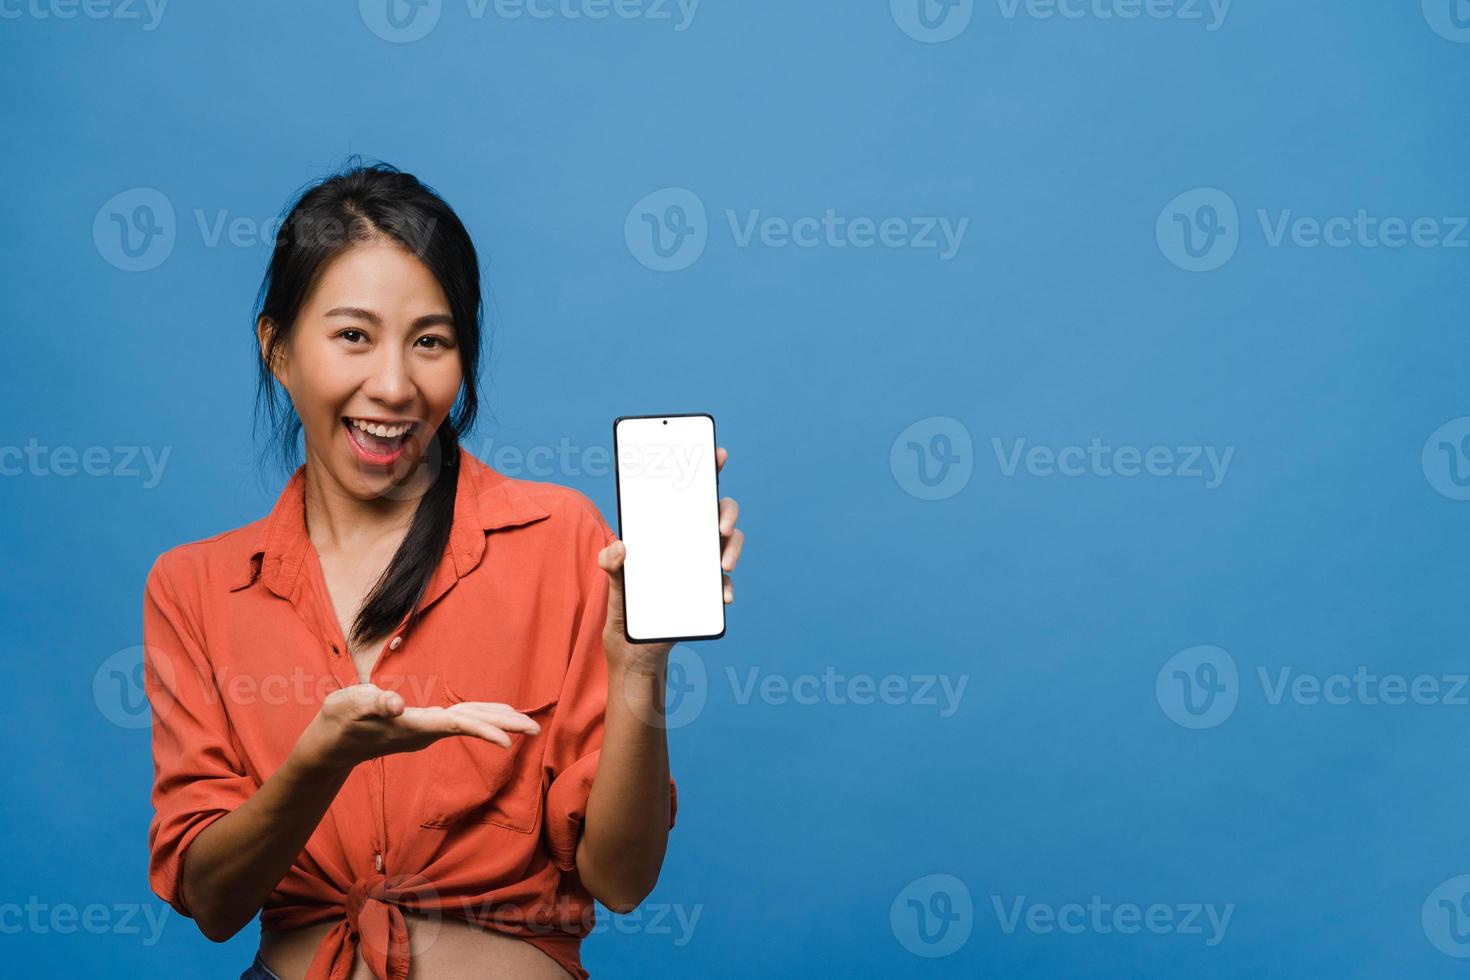 jonge aziatische dame toont een leeg smartphonescherm met positieve uitdrukking, glimlacht breed, gekleed in casual kleding en voelt zich gelukkig op een blauwe achtergrond. mobiele telefoon met wit scherm in vrouwelijke hand. foto